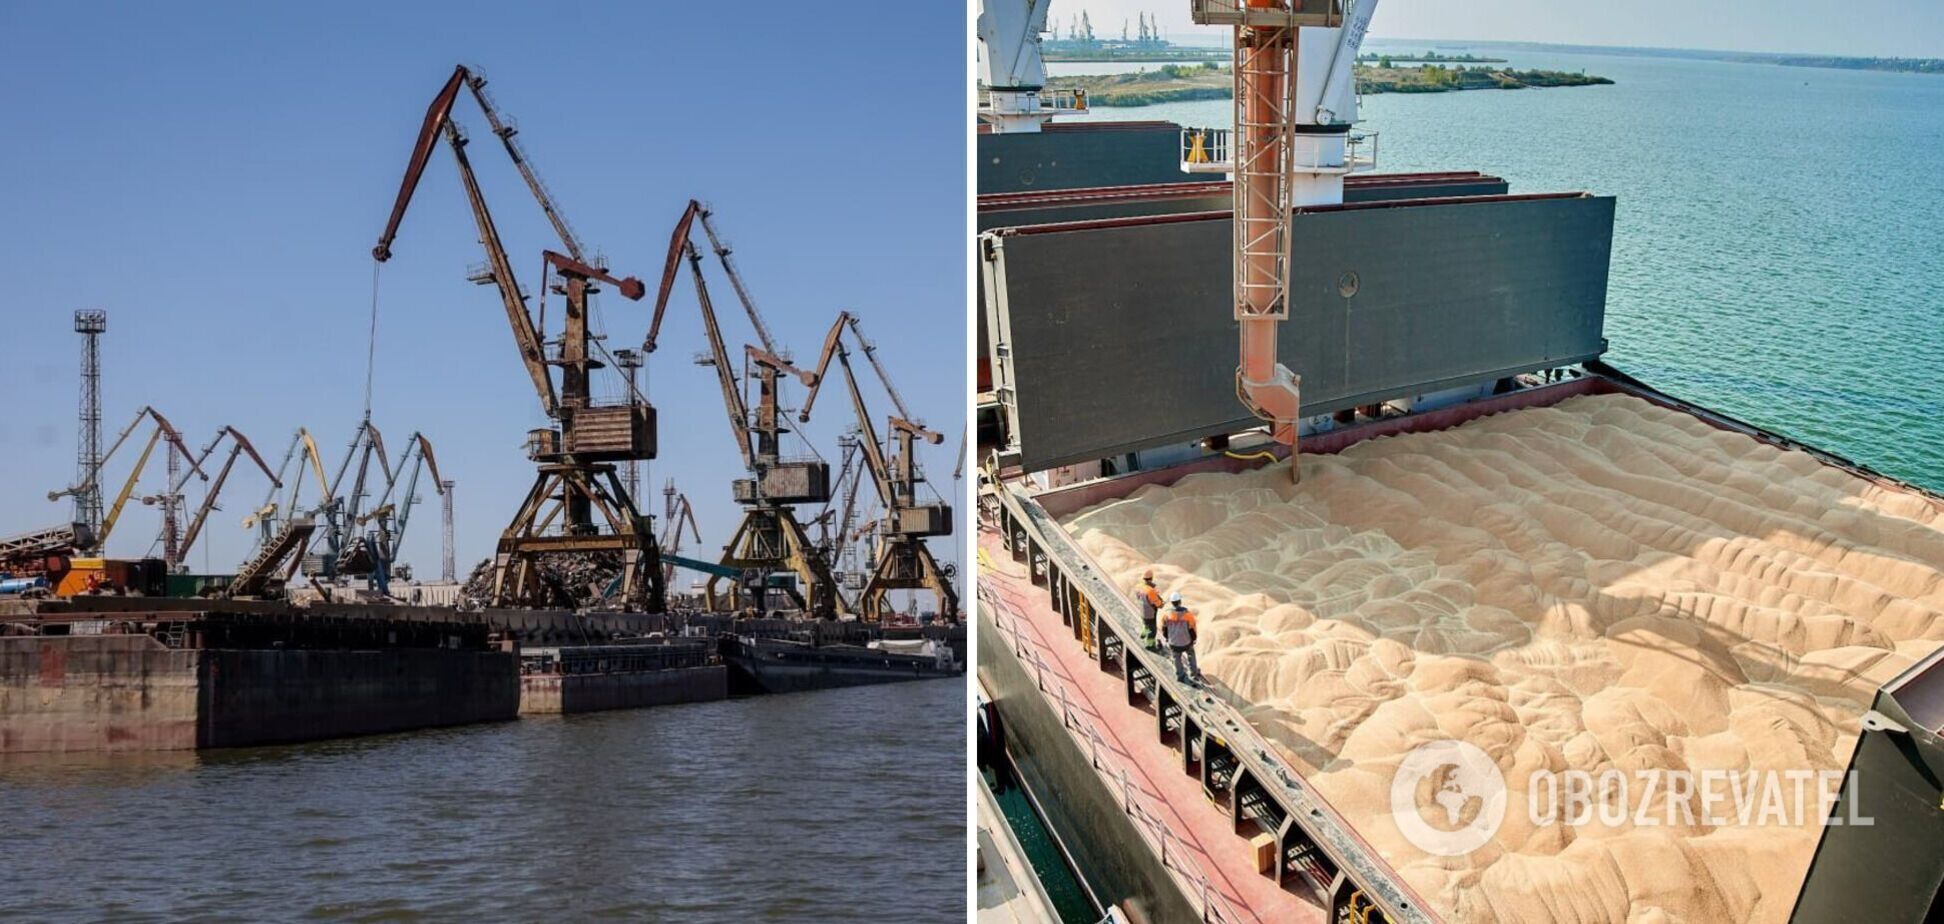 Військові успіхи в морі дали змогу Україні реалізувати експортний коридор морським шляхом, – експерт 